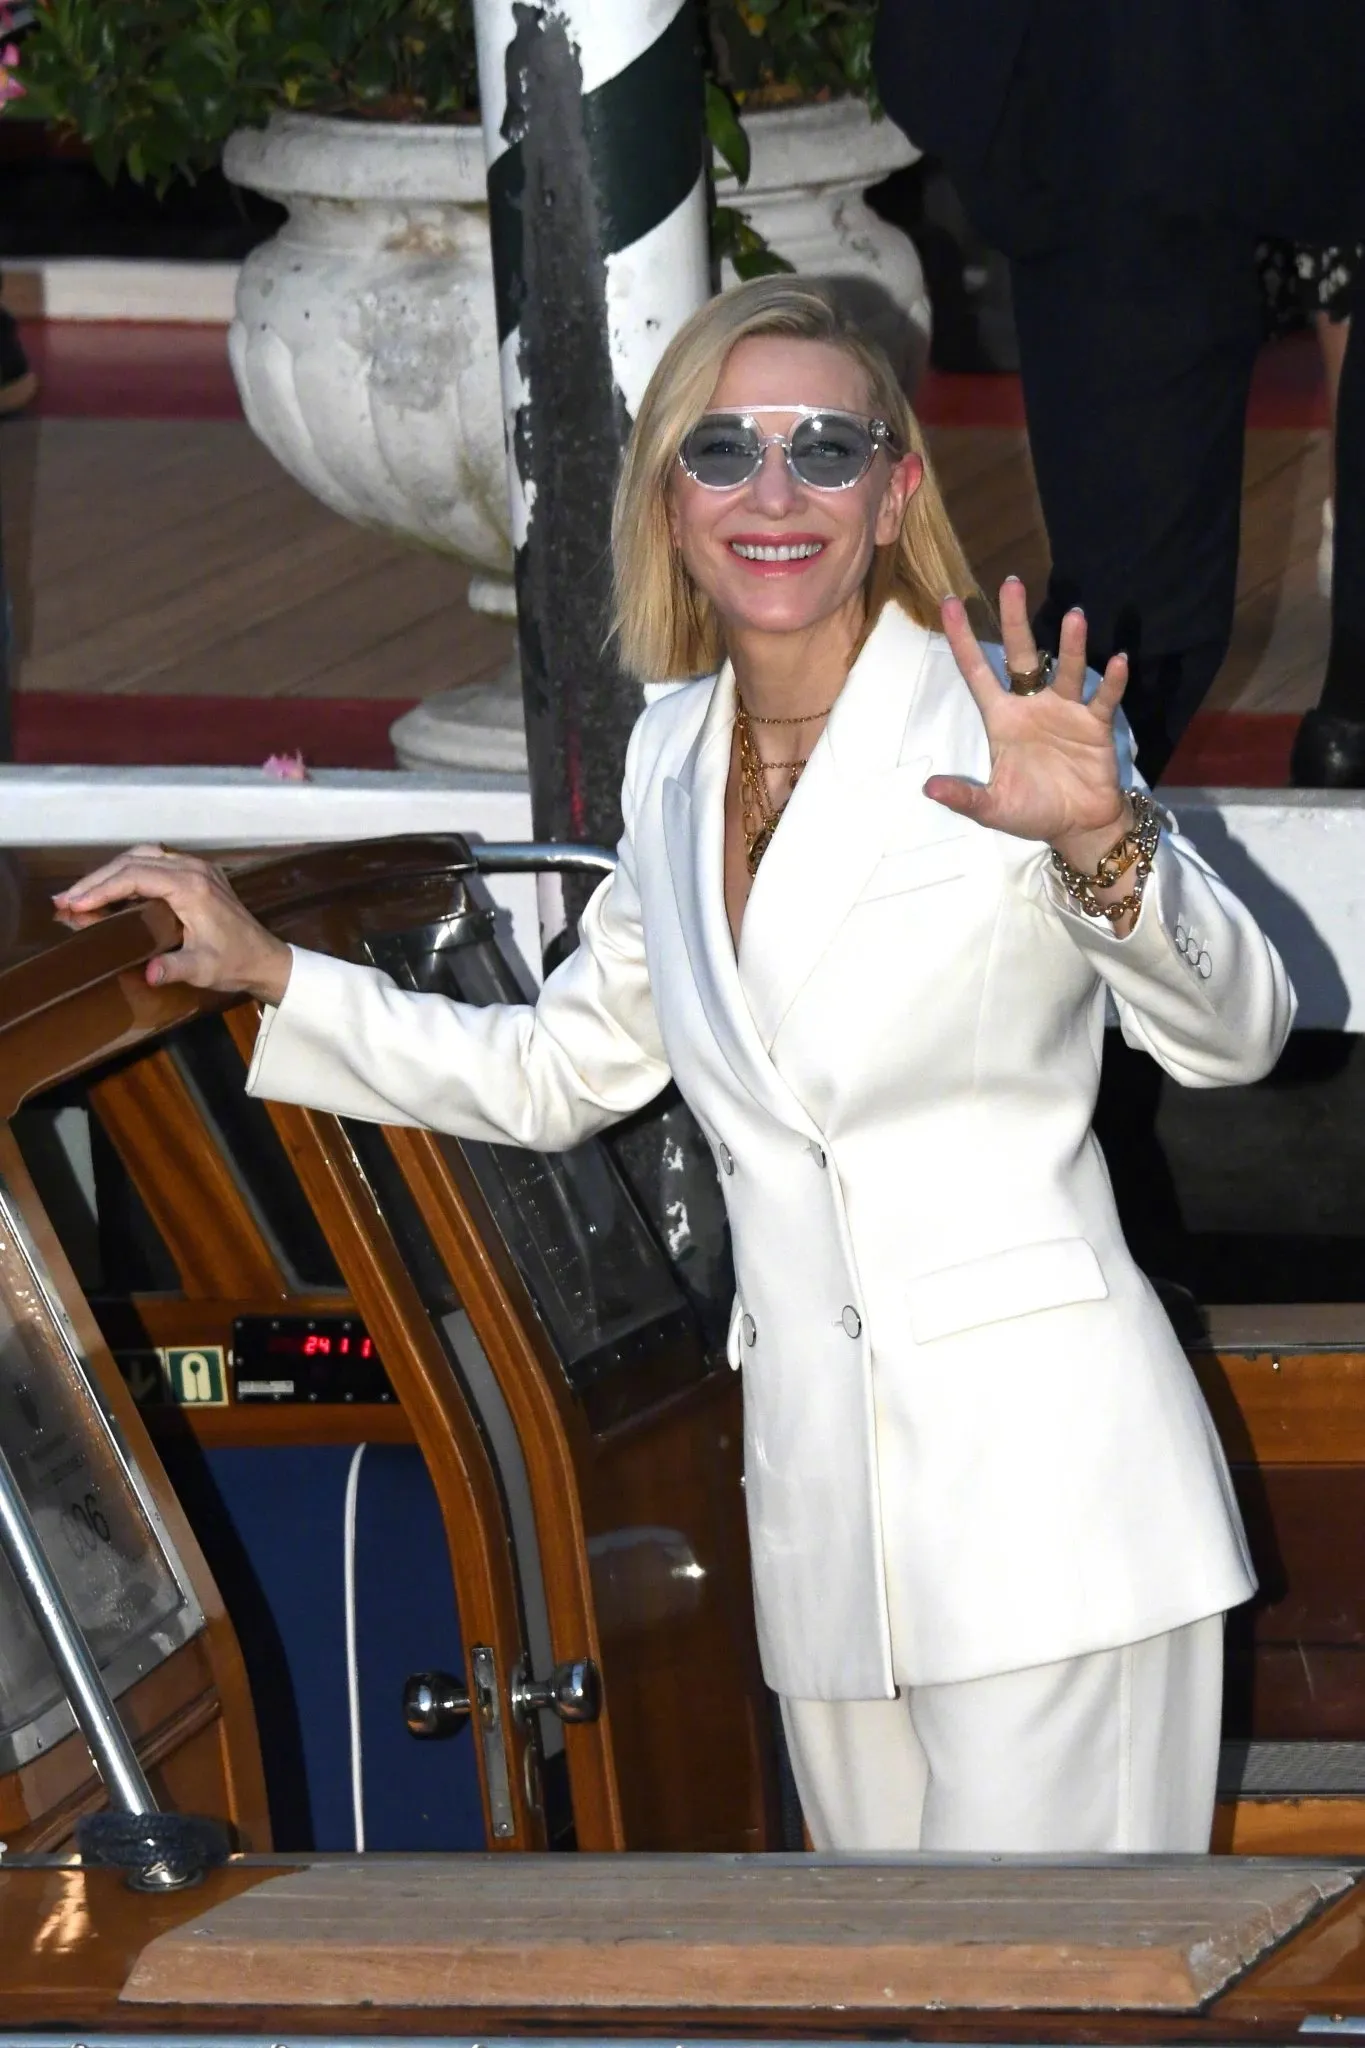 79th Venice International Film Festival kicks off, Cate Blanchett arrives | FMV6